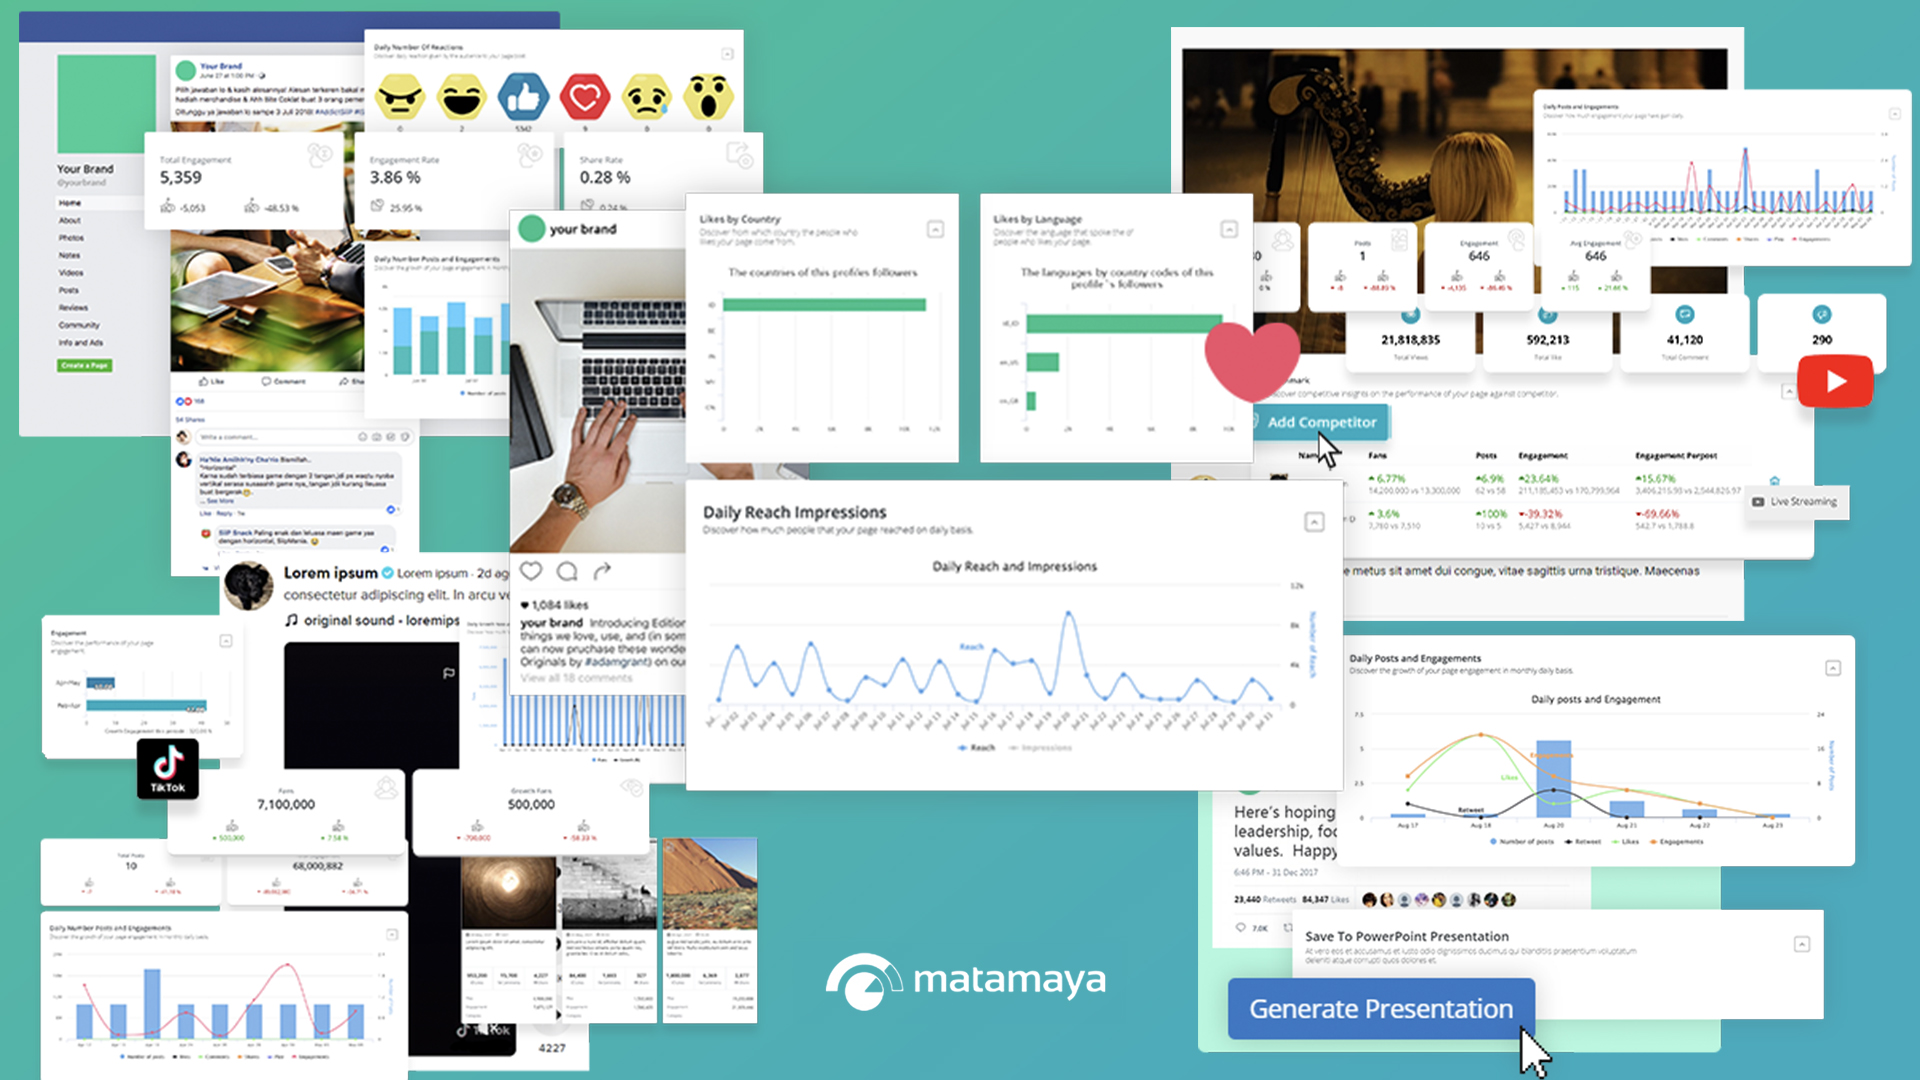 Matamaya Content Analysis Tool - Matamaya